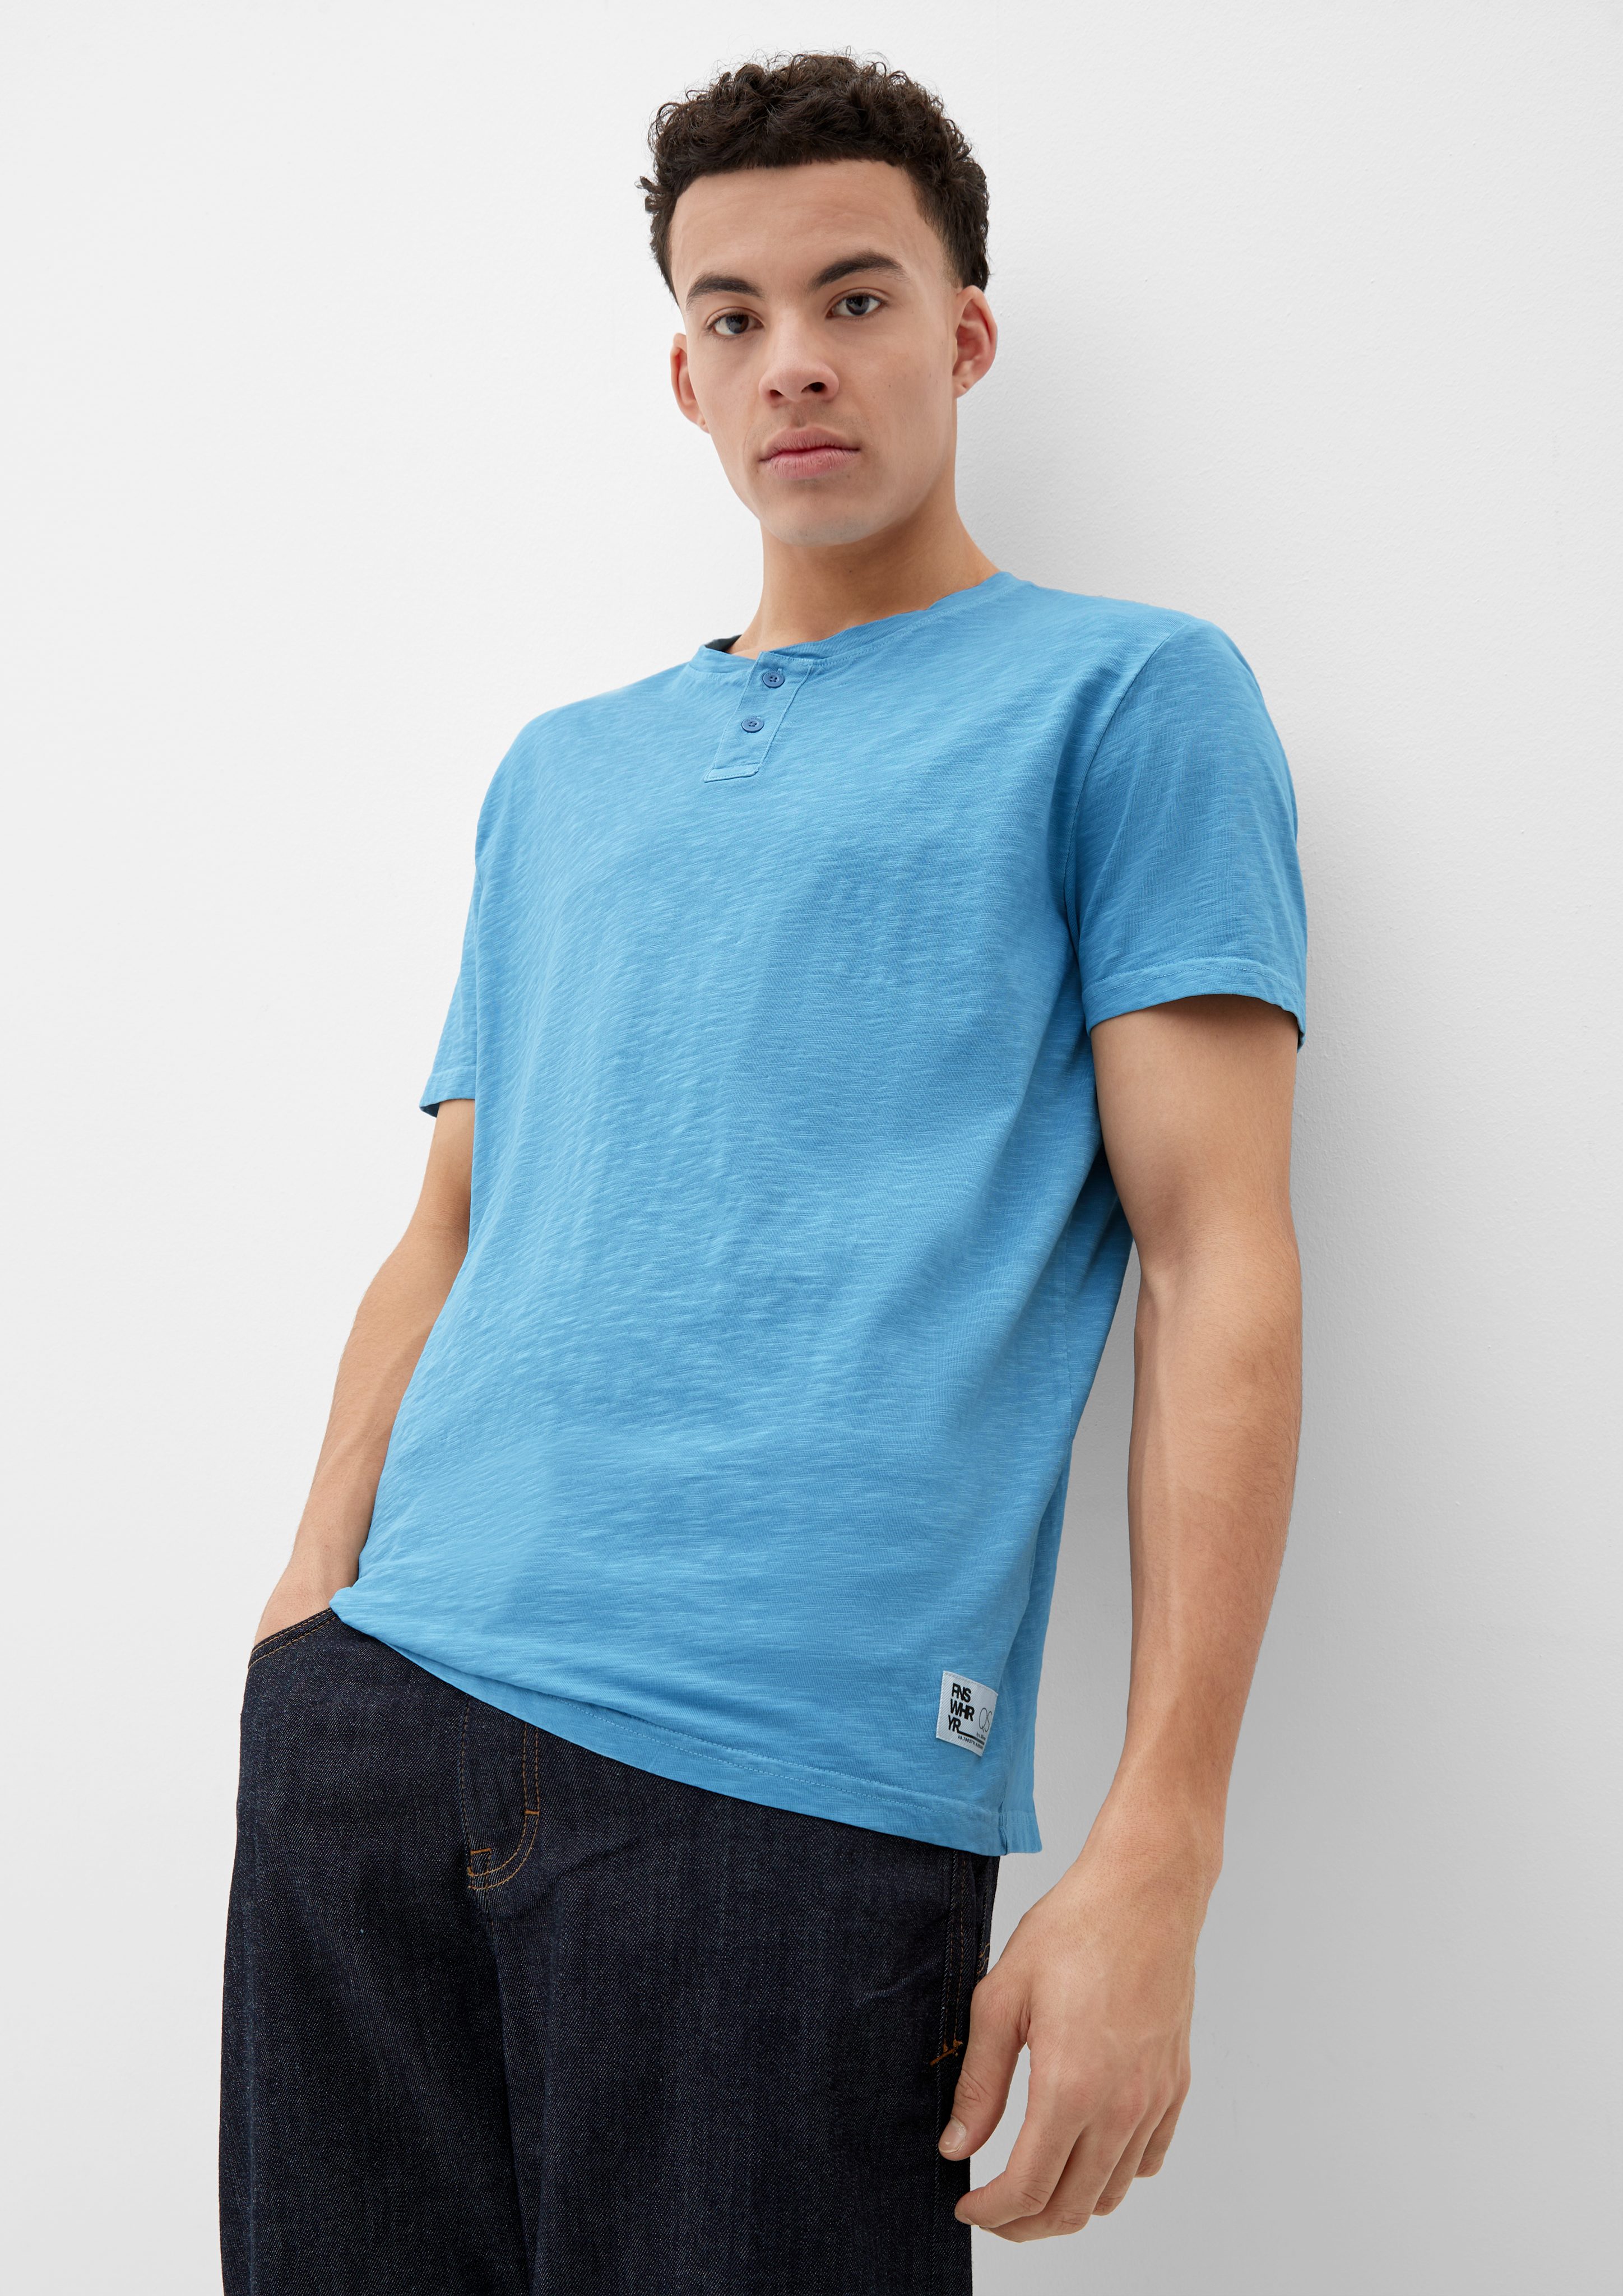 In Fachgeschäften QS Kurzarmshirt T-Shirt hellblau mit Henleyausschnitt Label-Patch